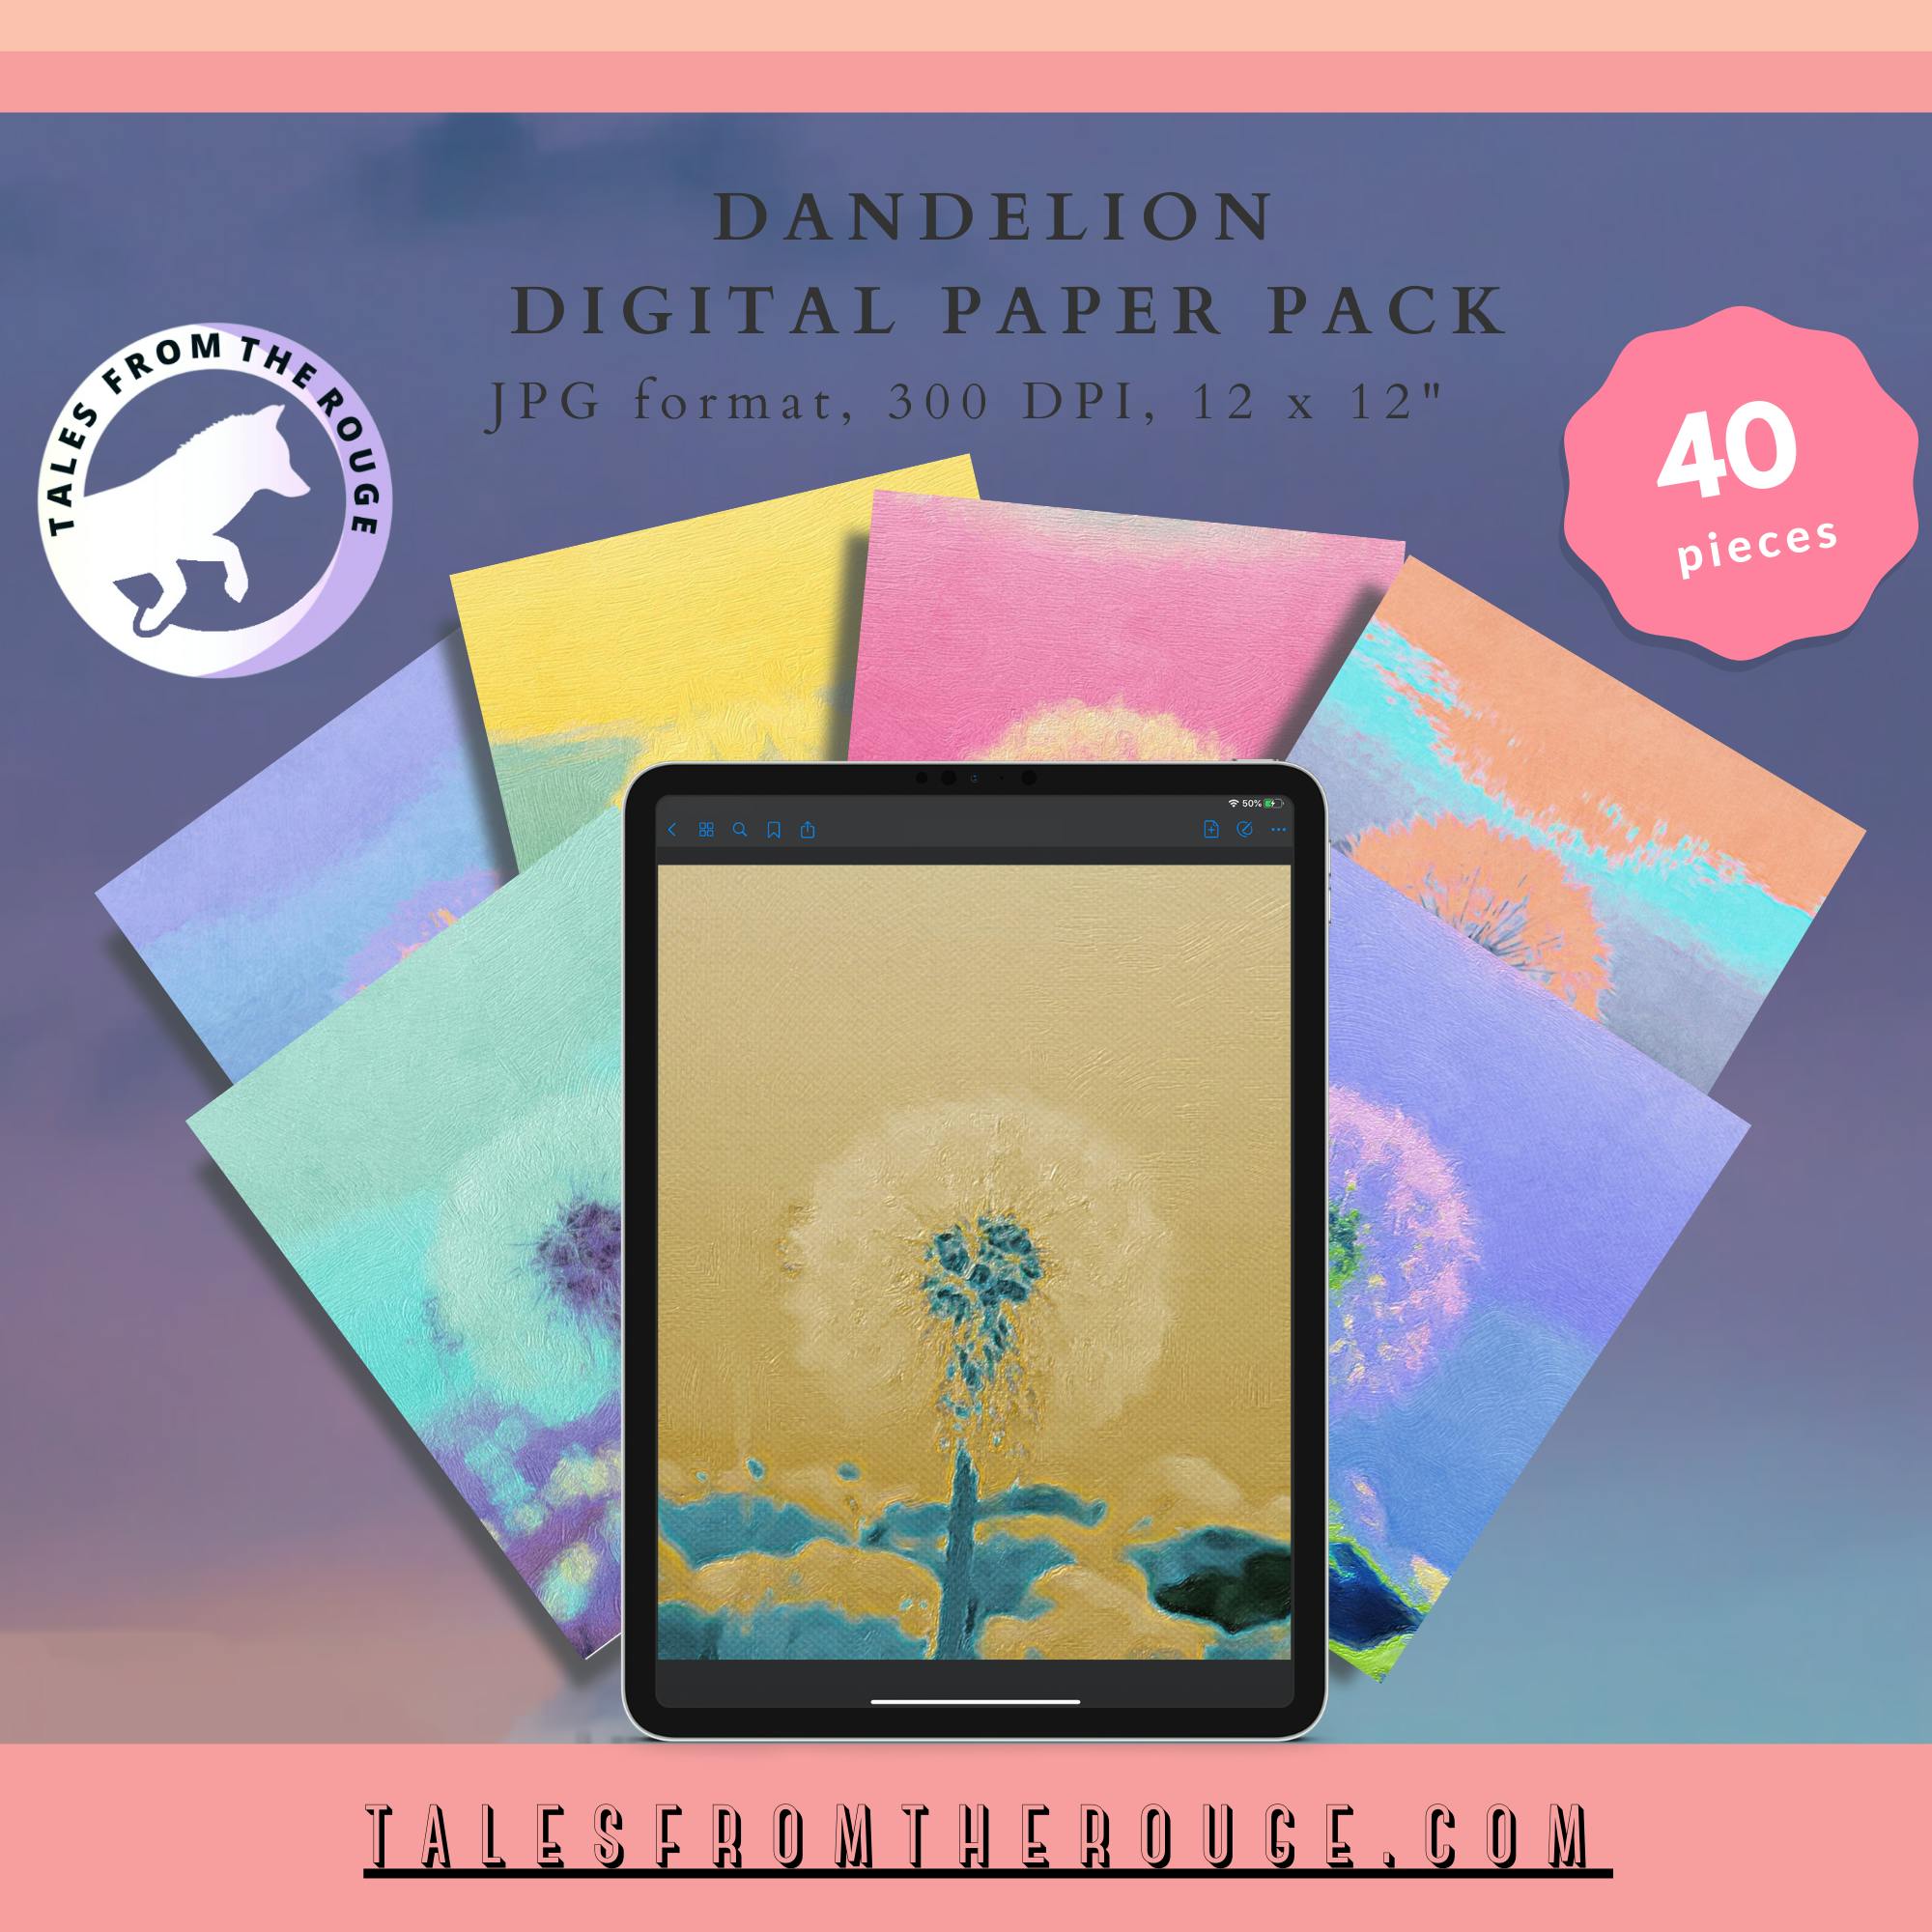 Dandelion Digital Paper Pack (40 pieces. Commercial Usage.)